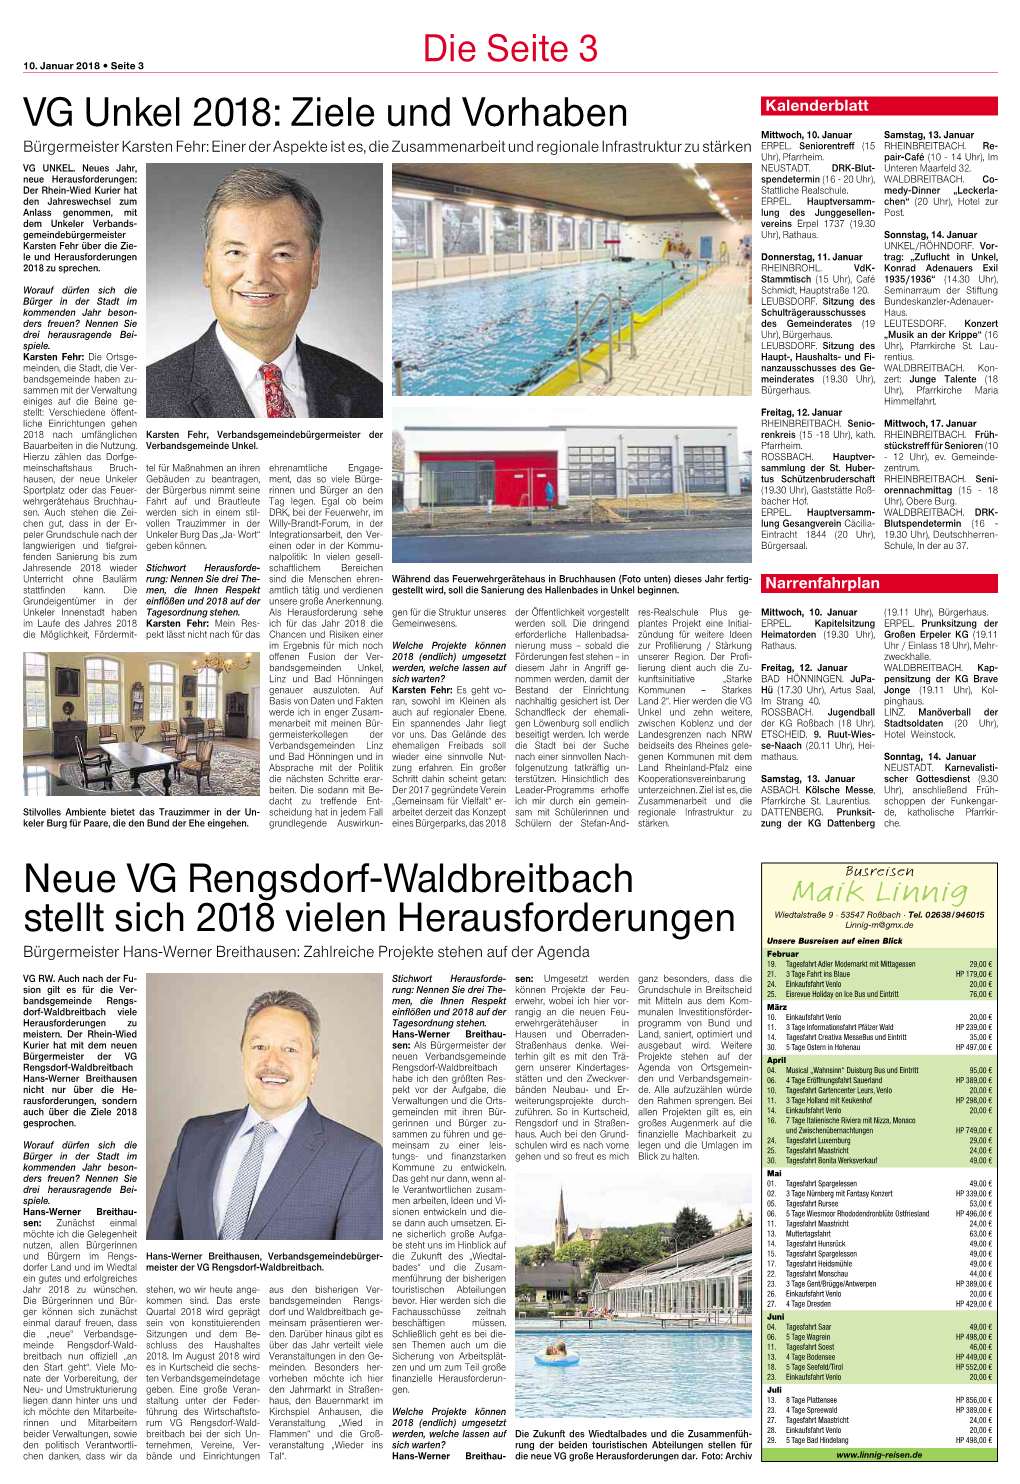 VG Unkel 2018: Ziele Und Vorhaben Neue VG Rengsdorf-Waldbreitbach